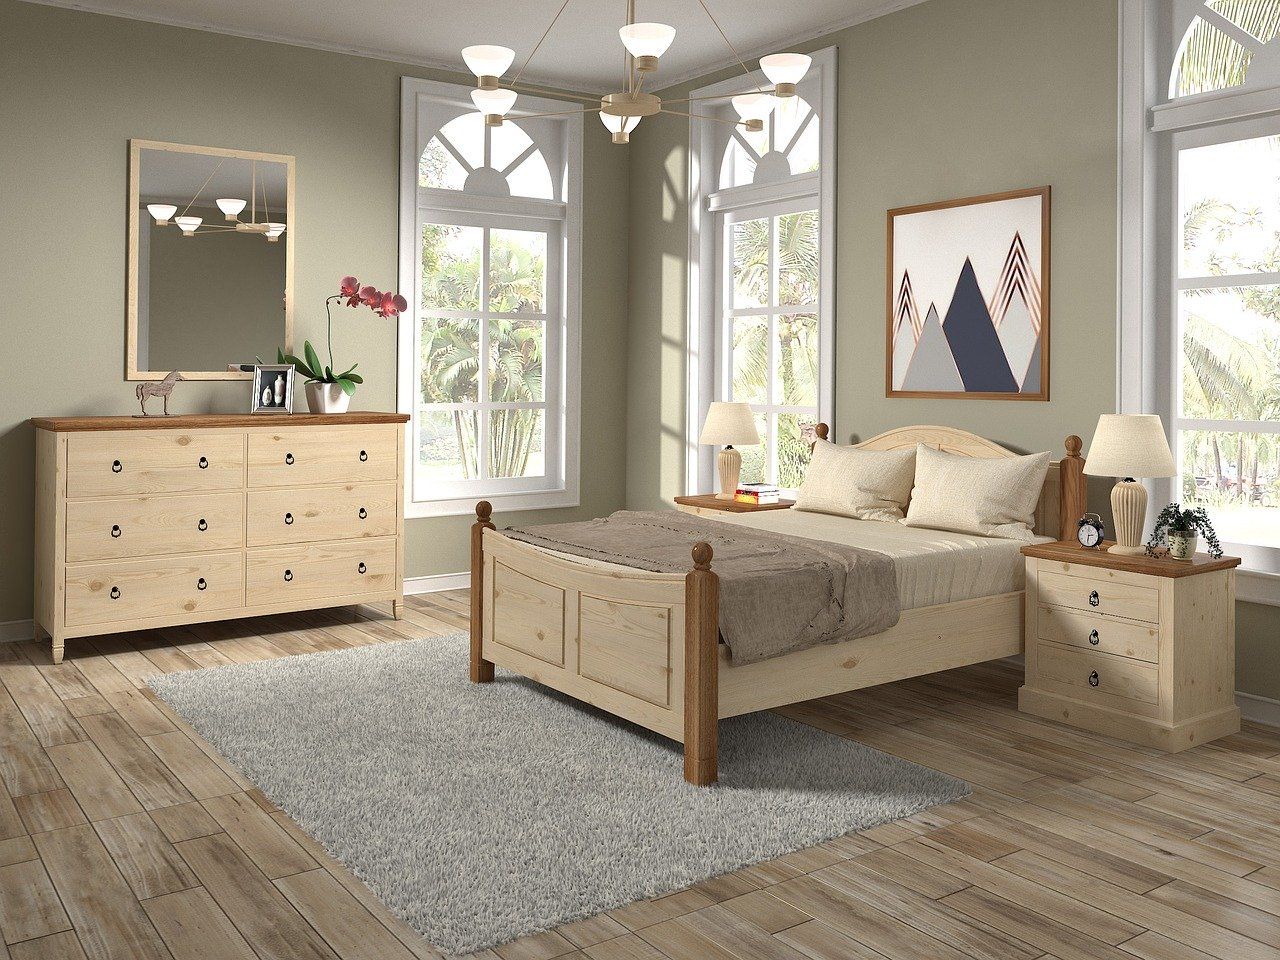 Dlaczego warto się zdecydować na kupno drewnianego łóżka?